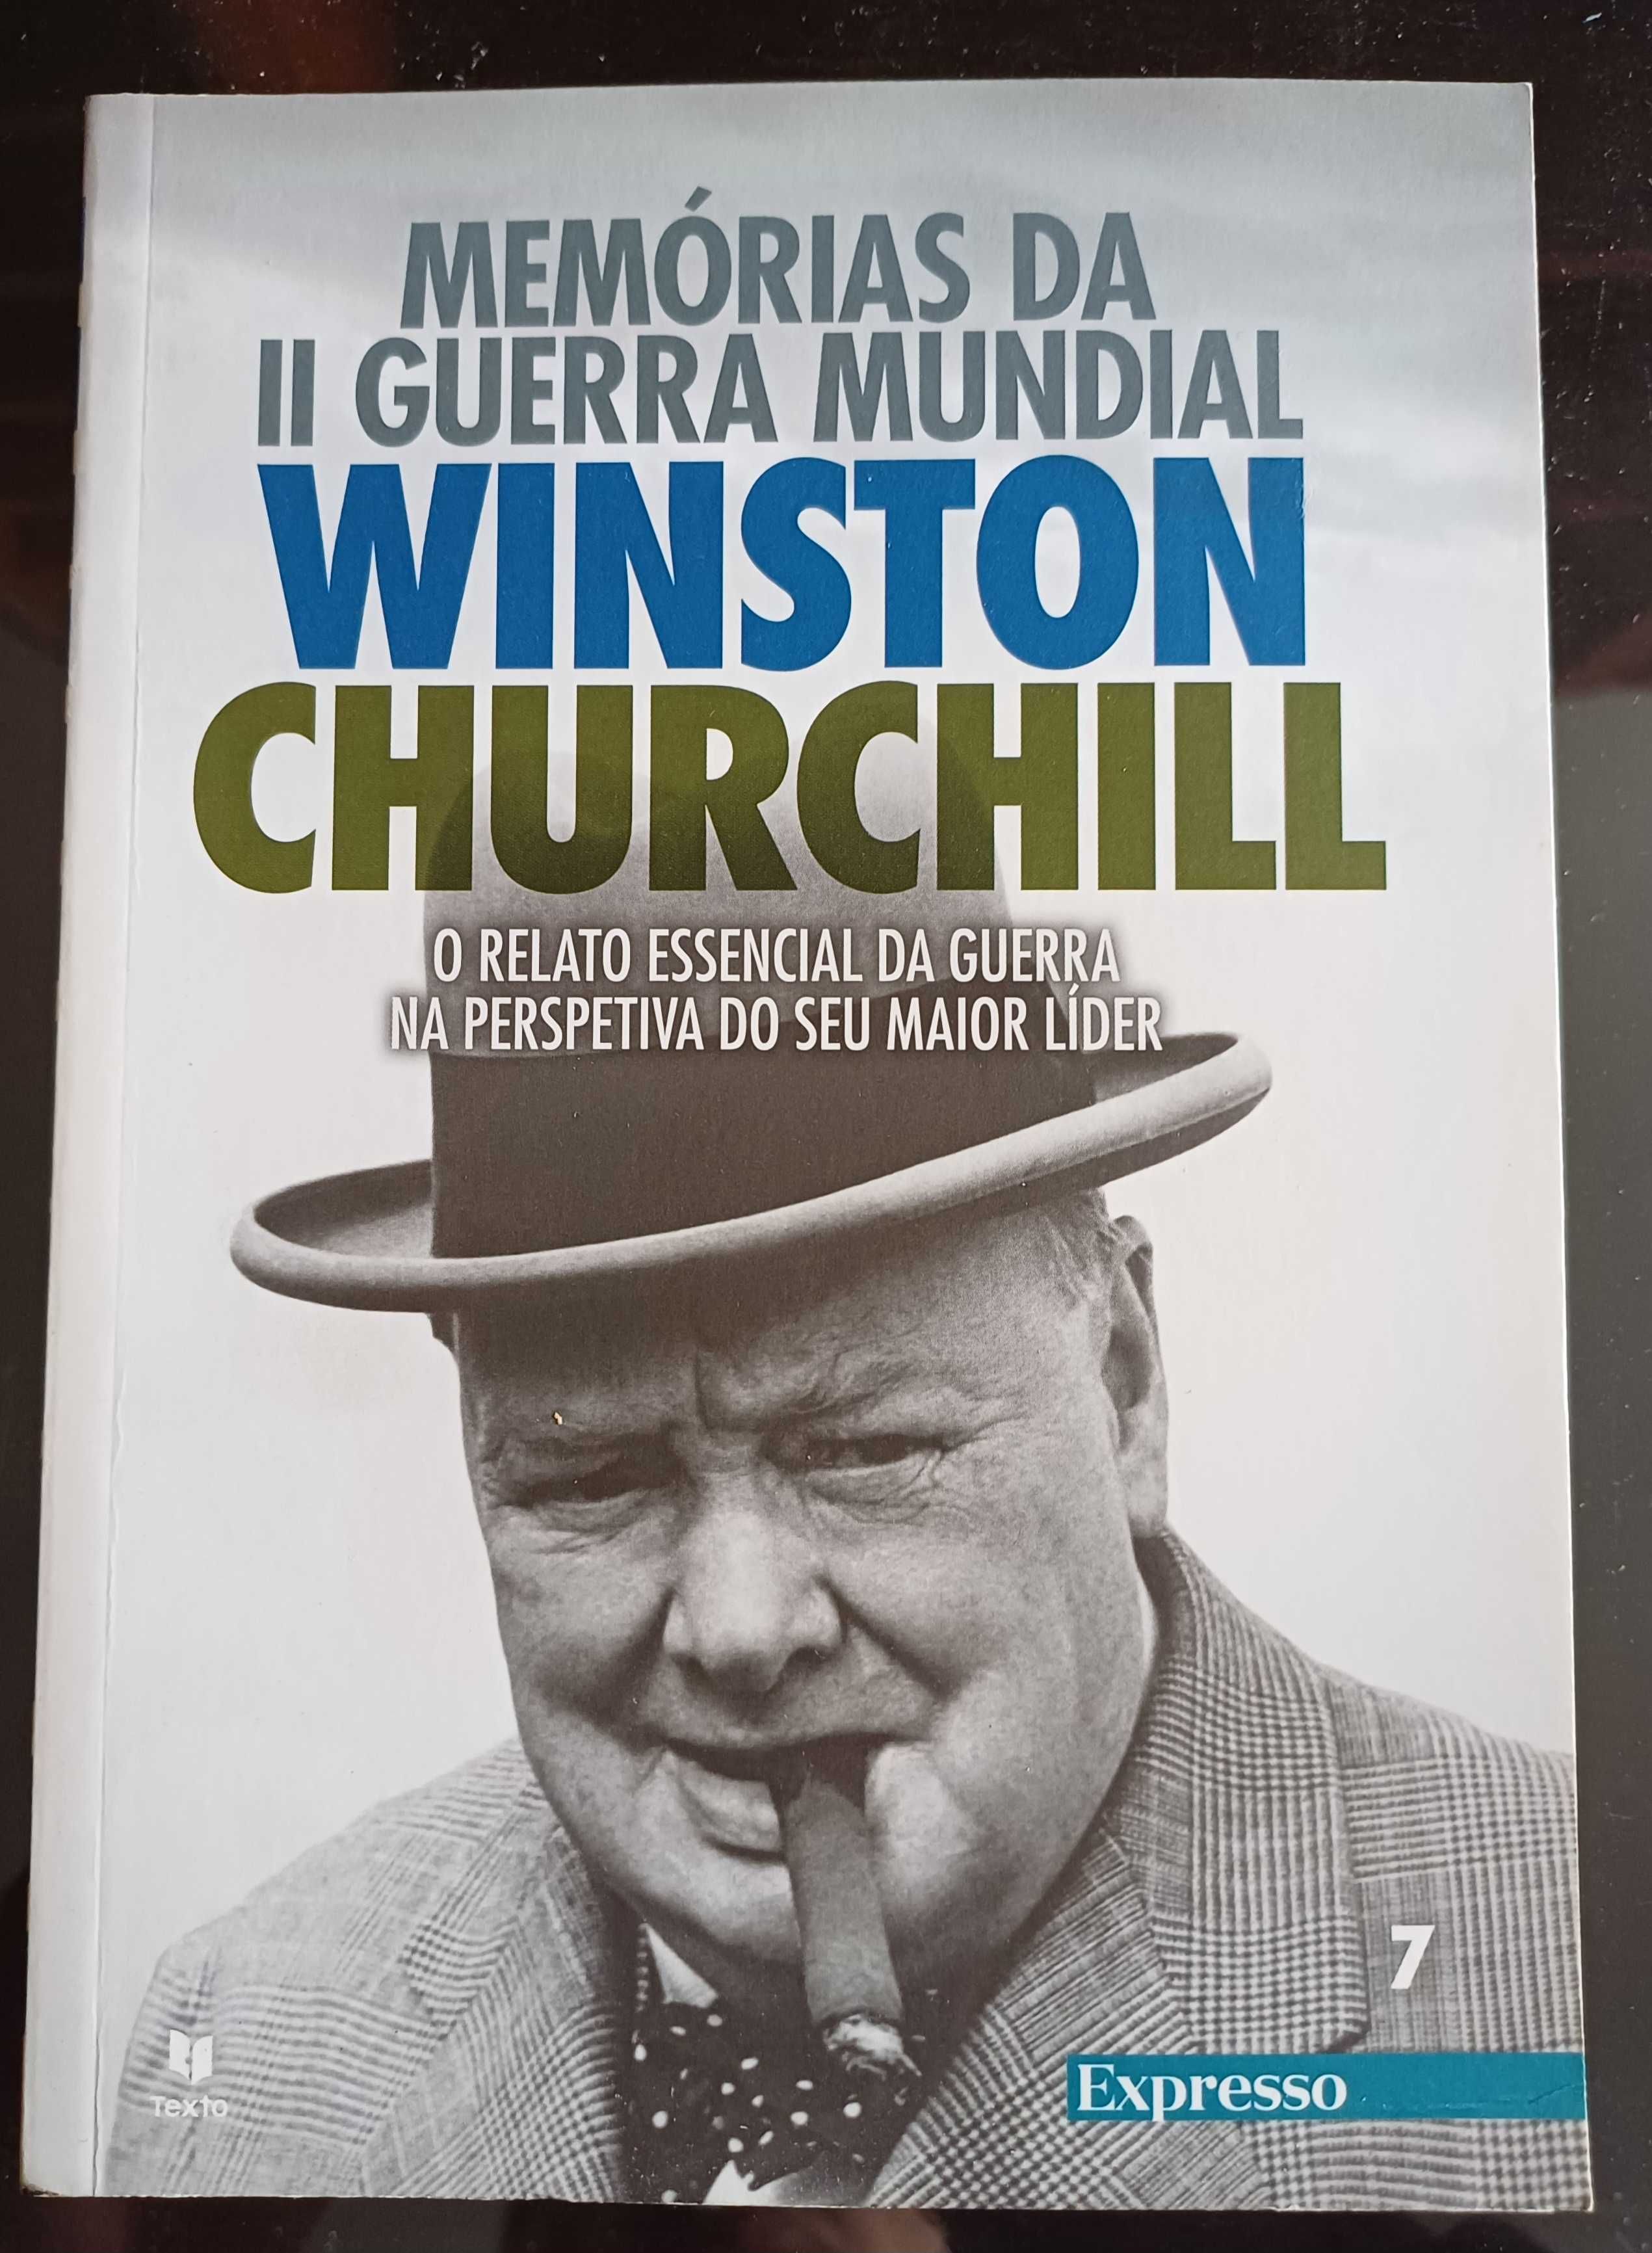 Winston Churchill - Memórias da 2ª Guerra Mundial (Vol. IV, Livro 7)